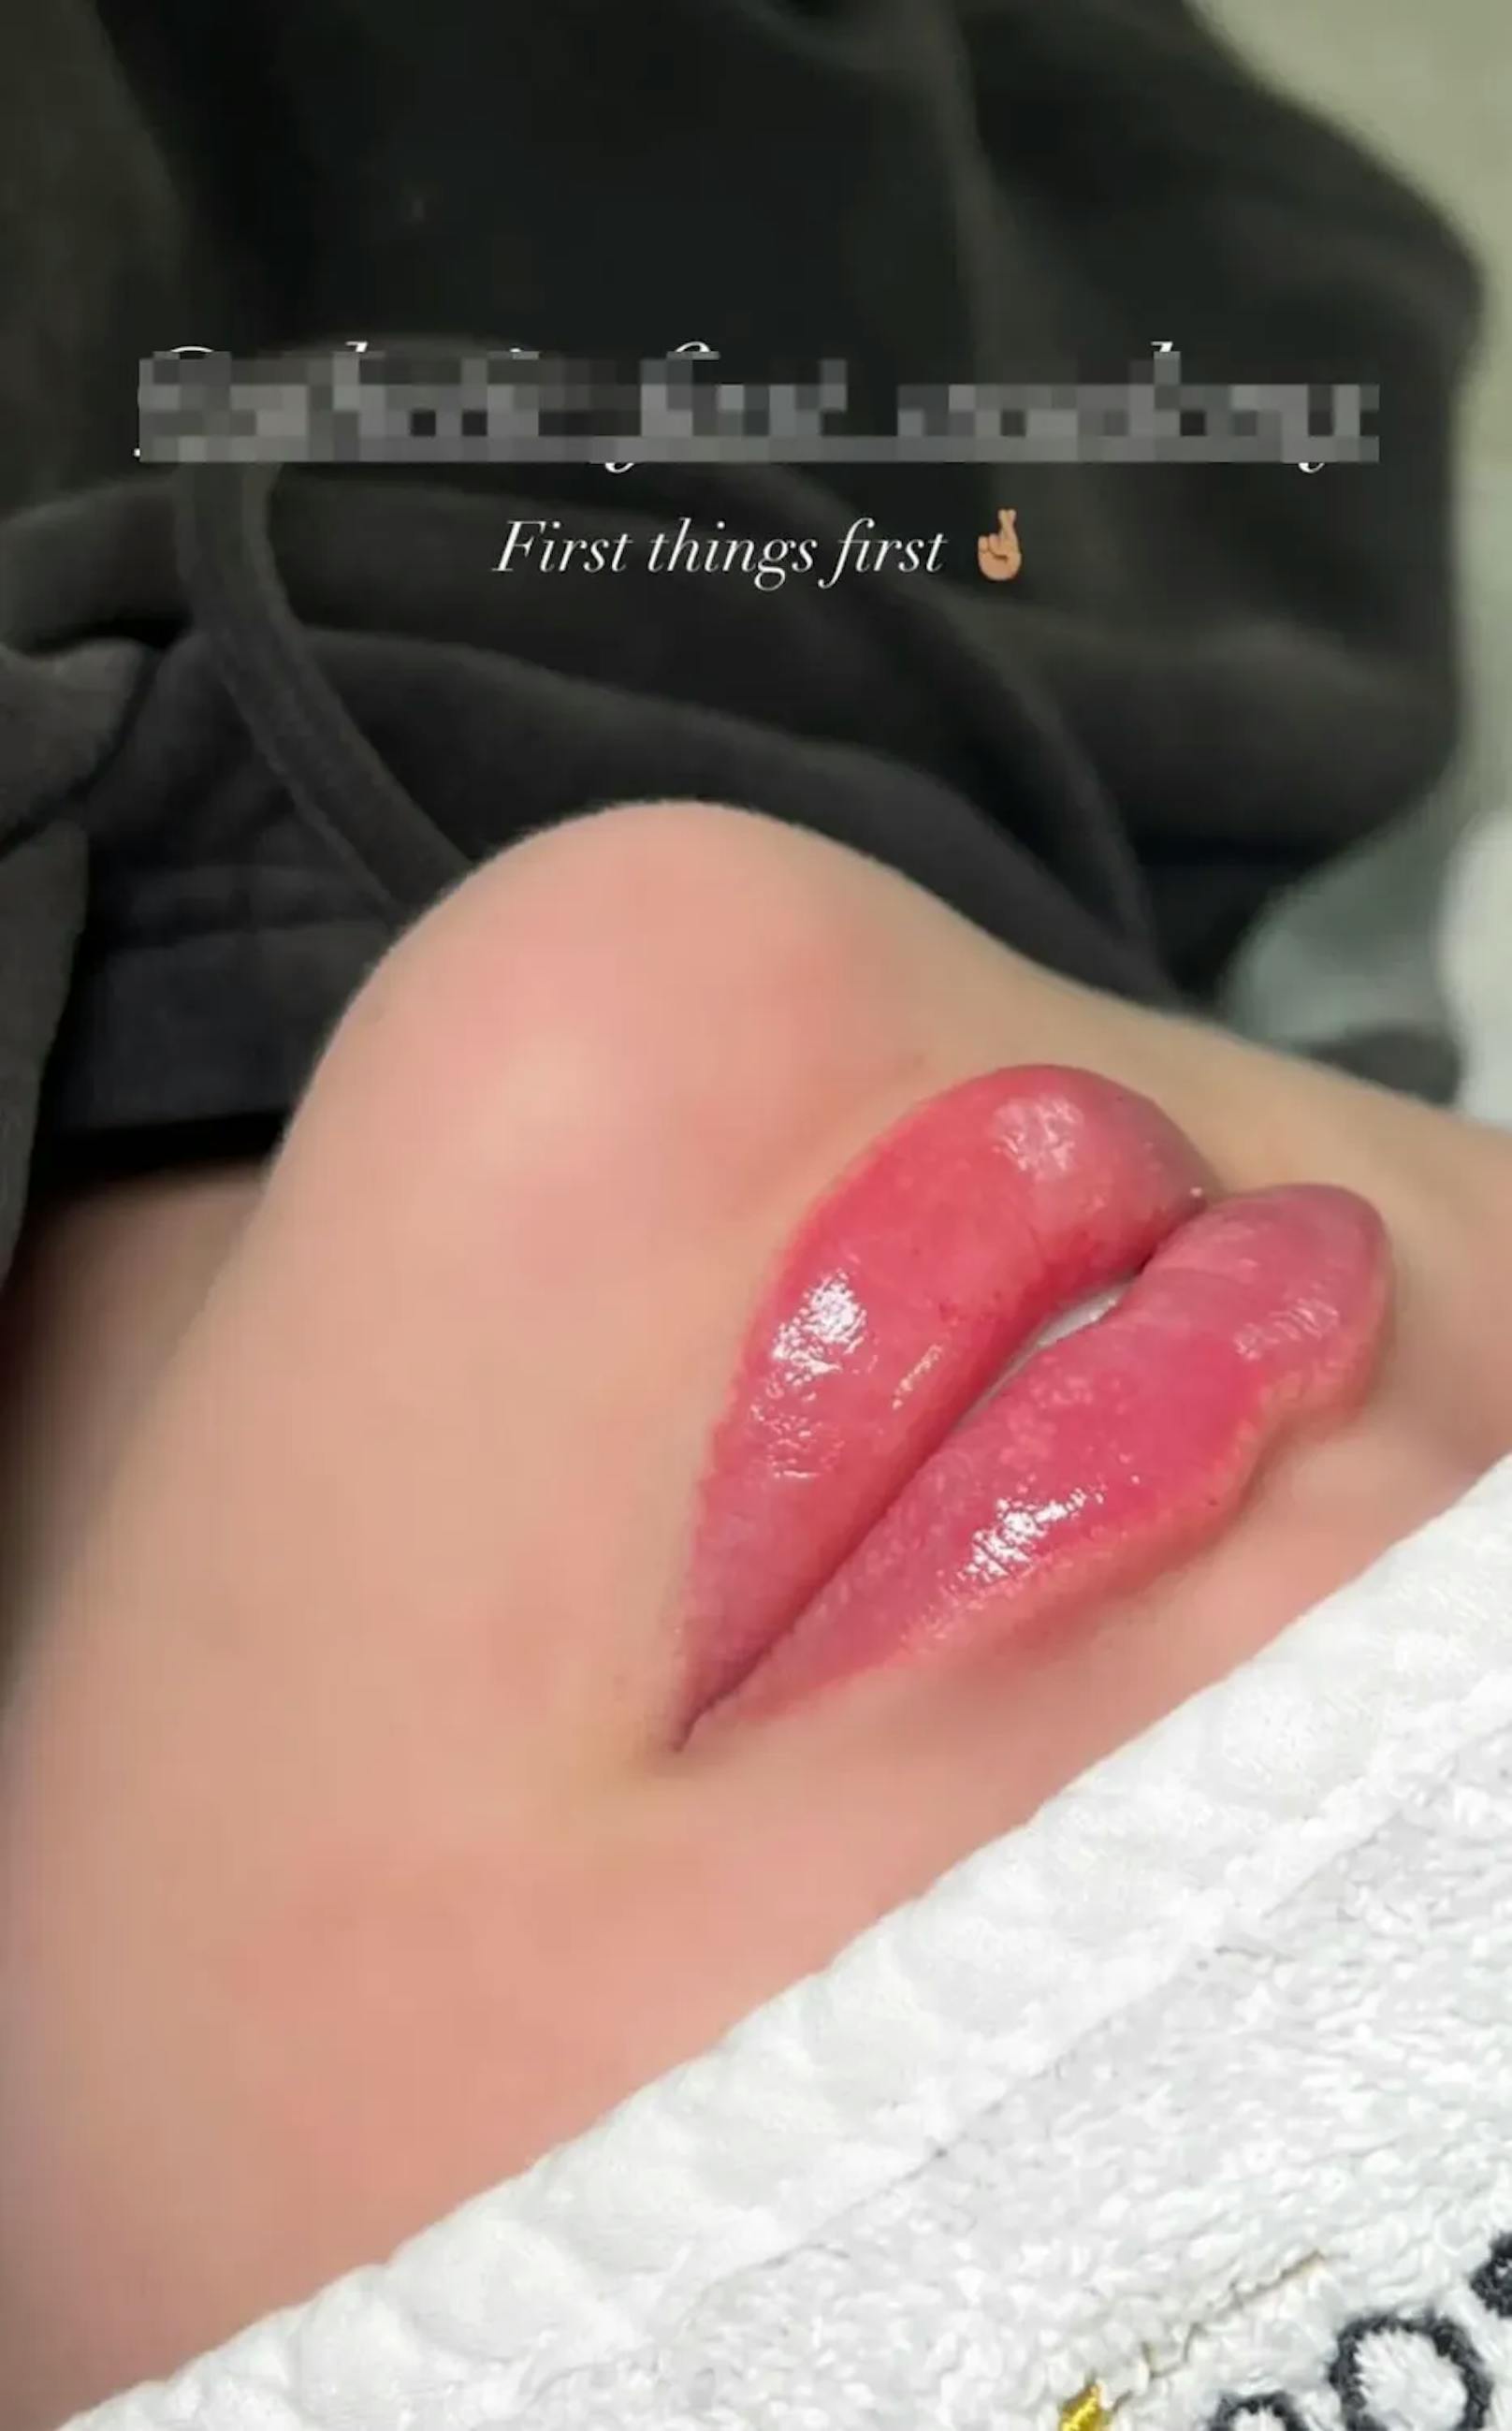 Das Erotik-Model postet am Mittwoch eine Story davon, wie sie sich ihre Lippen aufspritzen ließ.